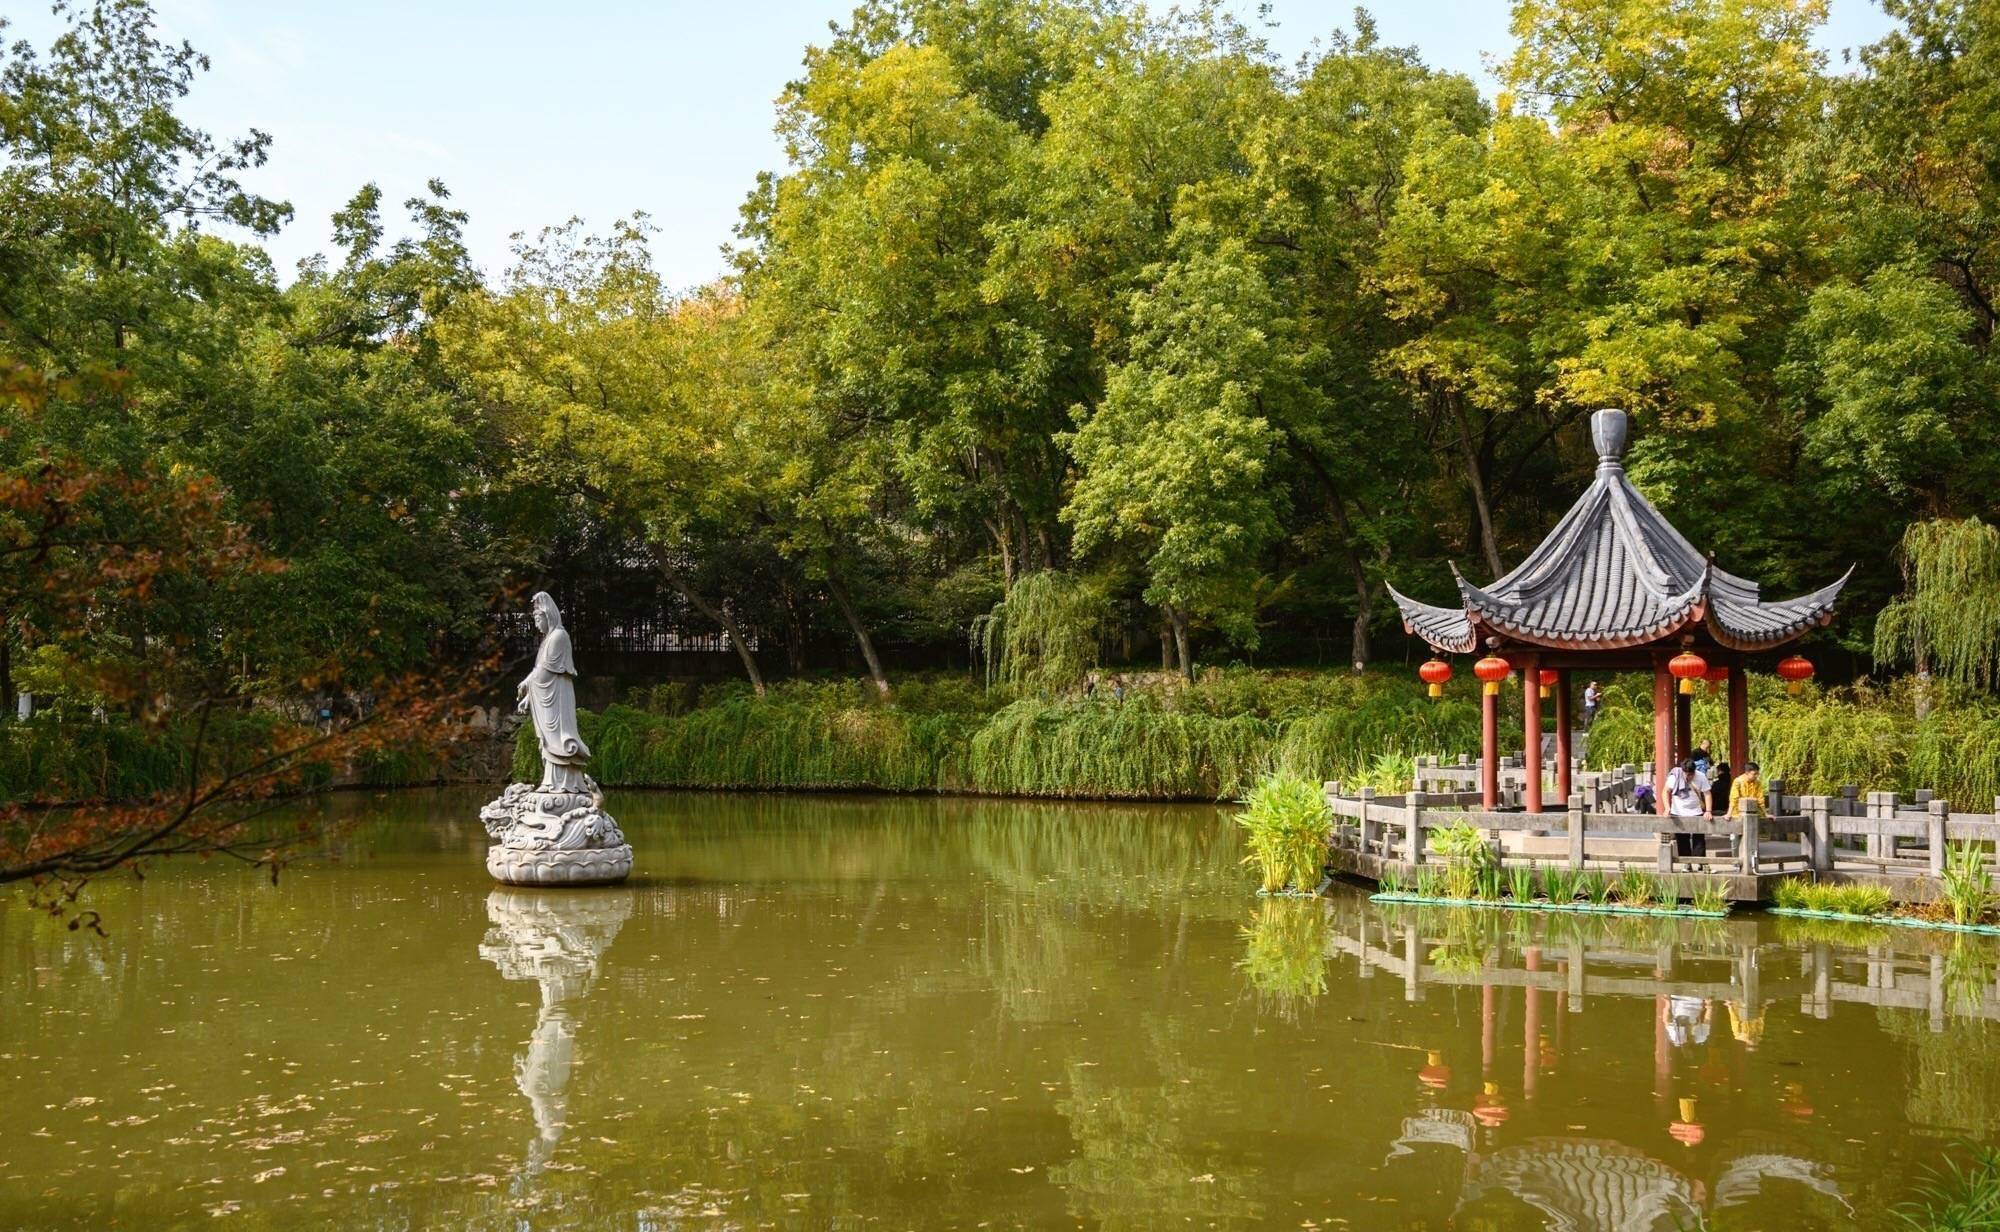 南京栖霞寺，中国四大名刹之一，至今已有1500多年的历史